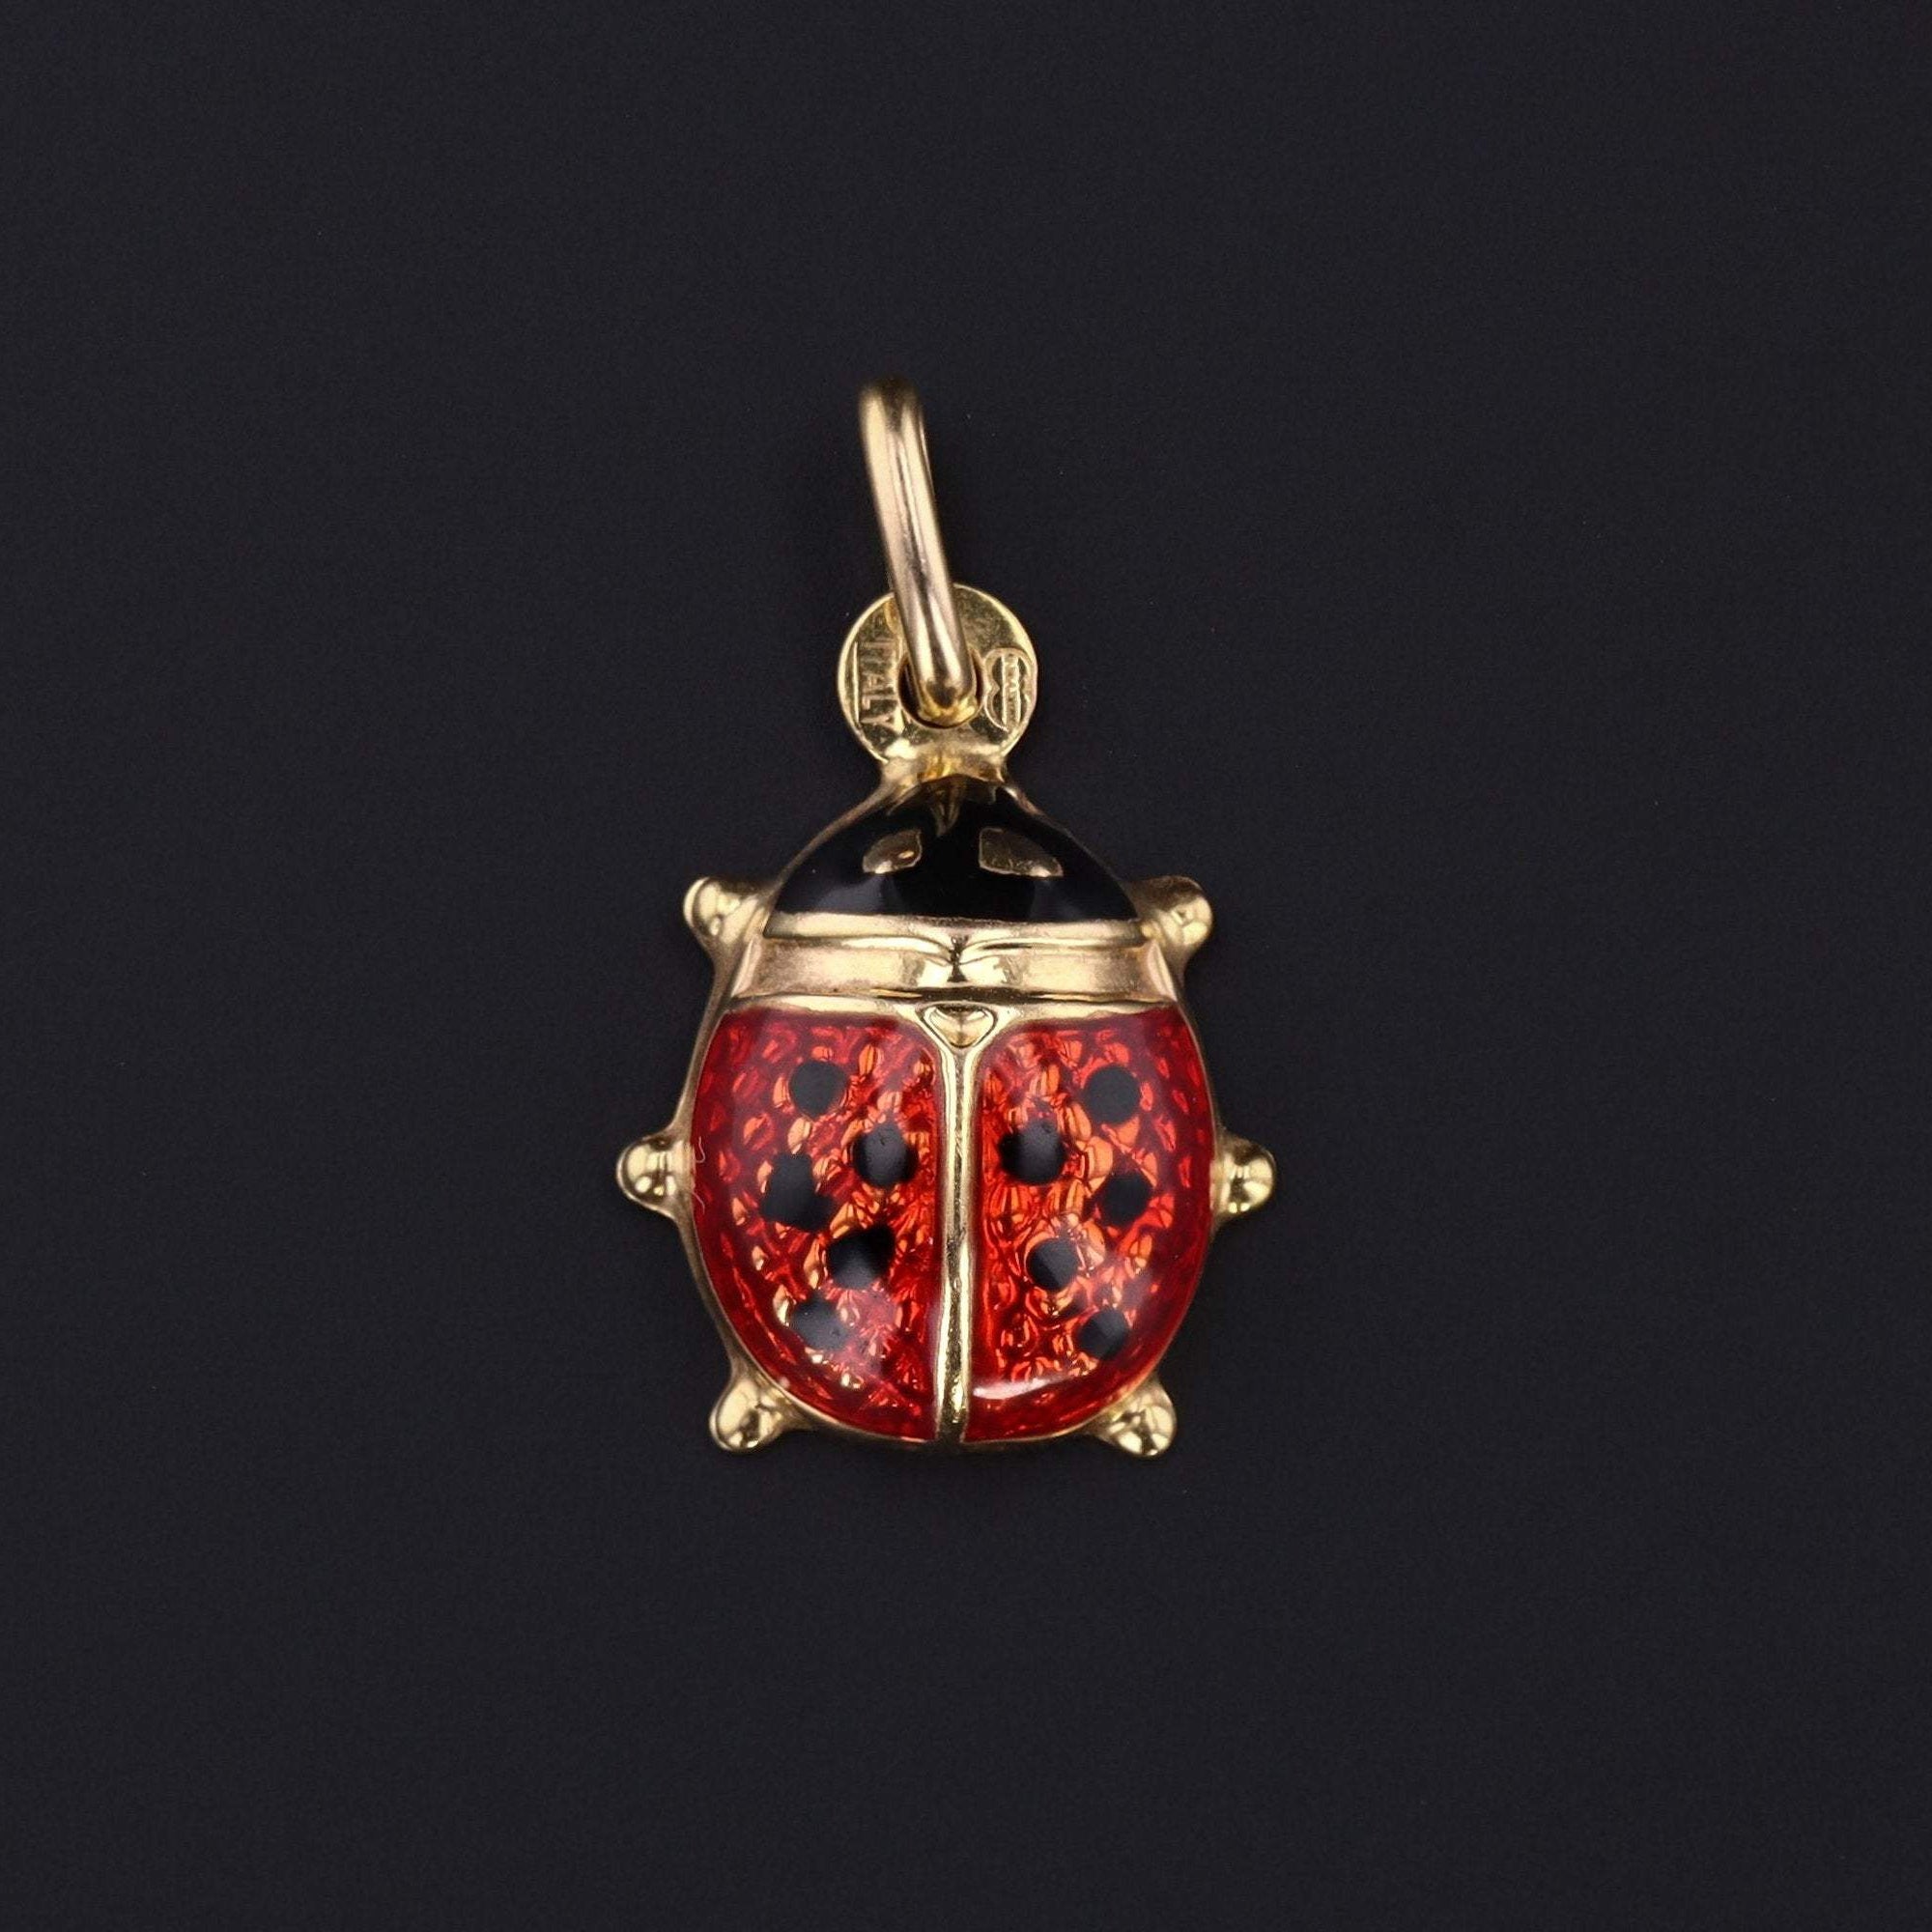 Vintage Ladybug Charm | 14k Gold & Enamel Ladybug Charm | Gold Charm | Vintage Charm